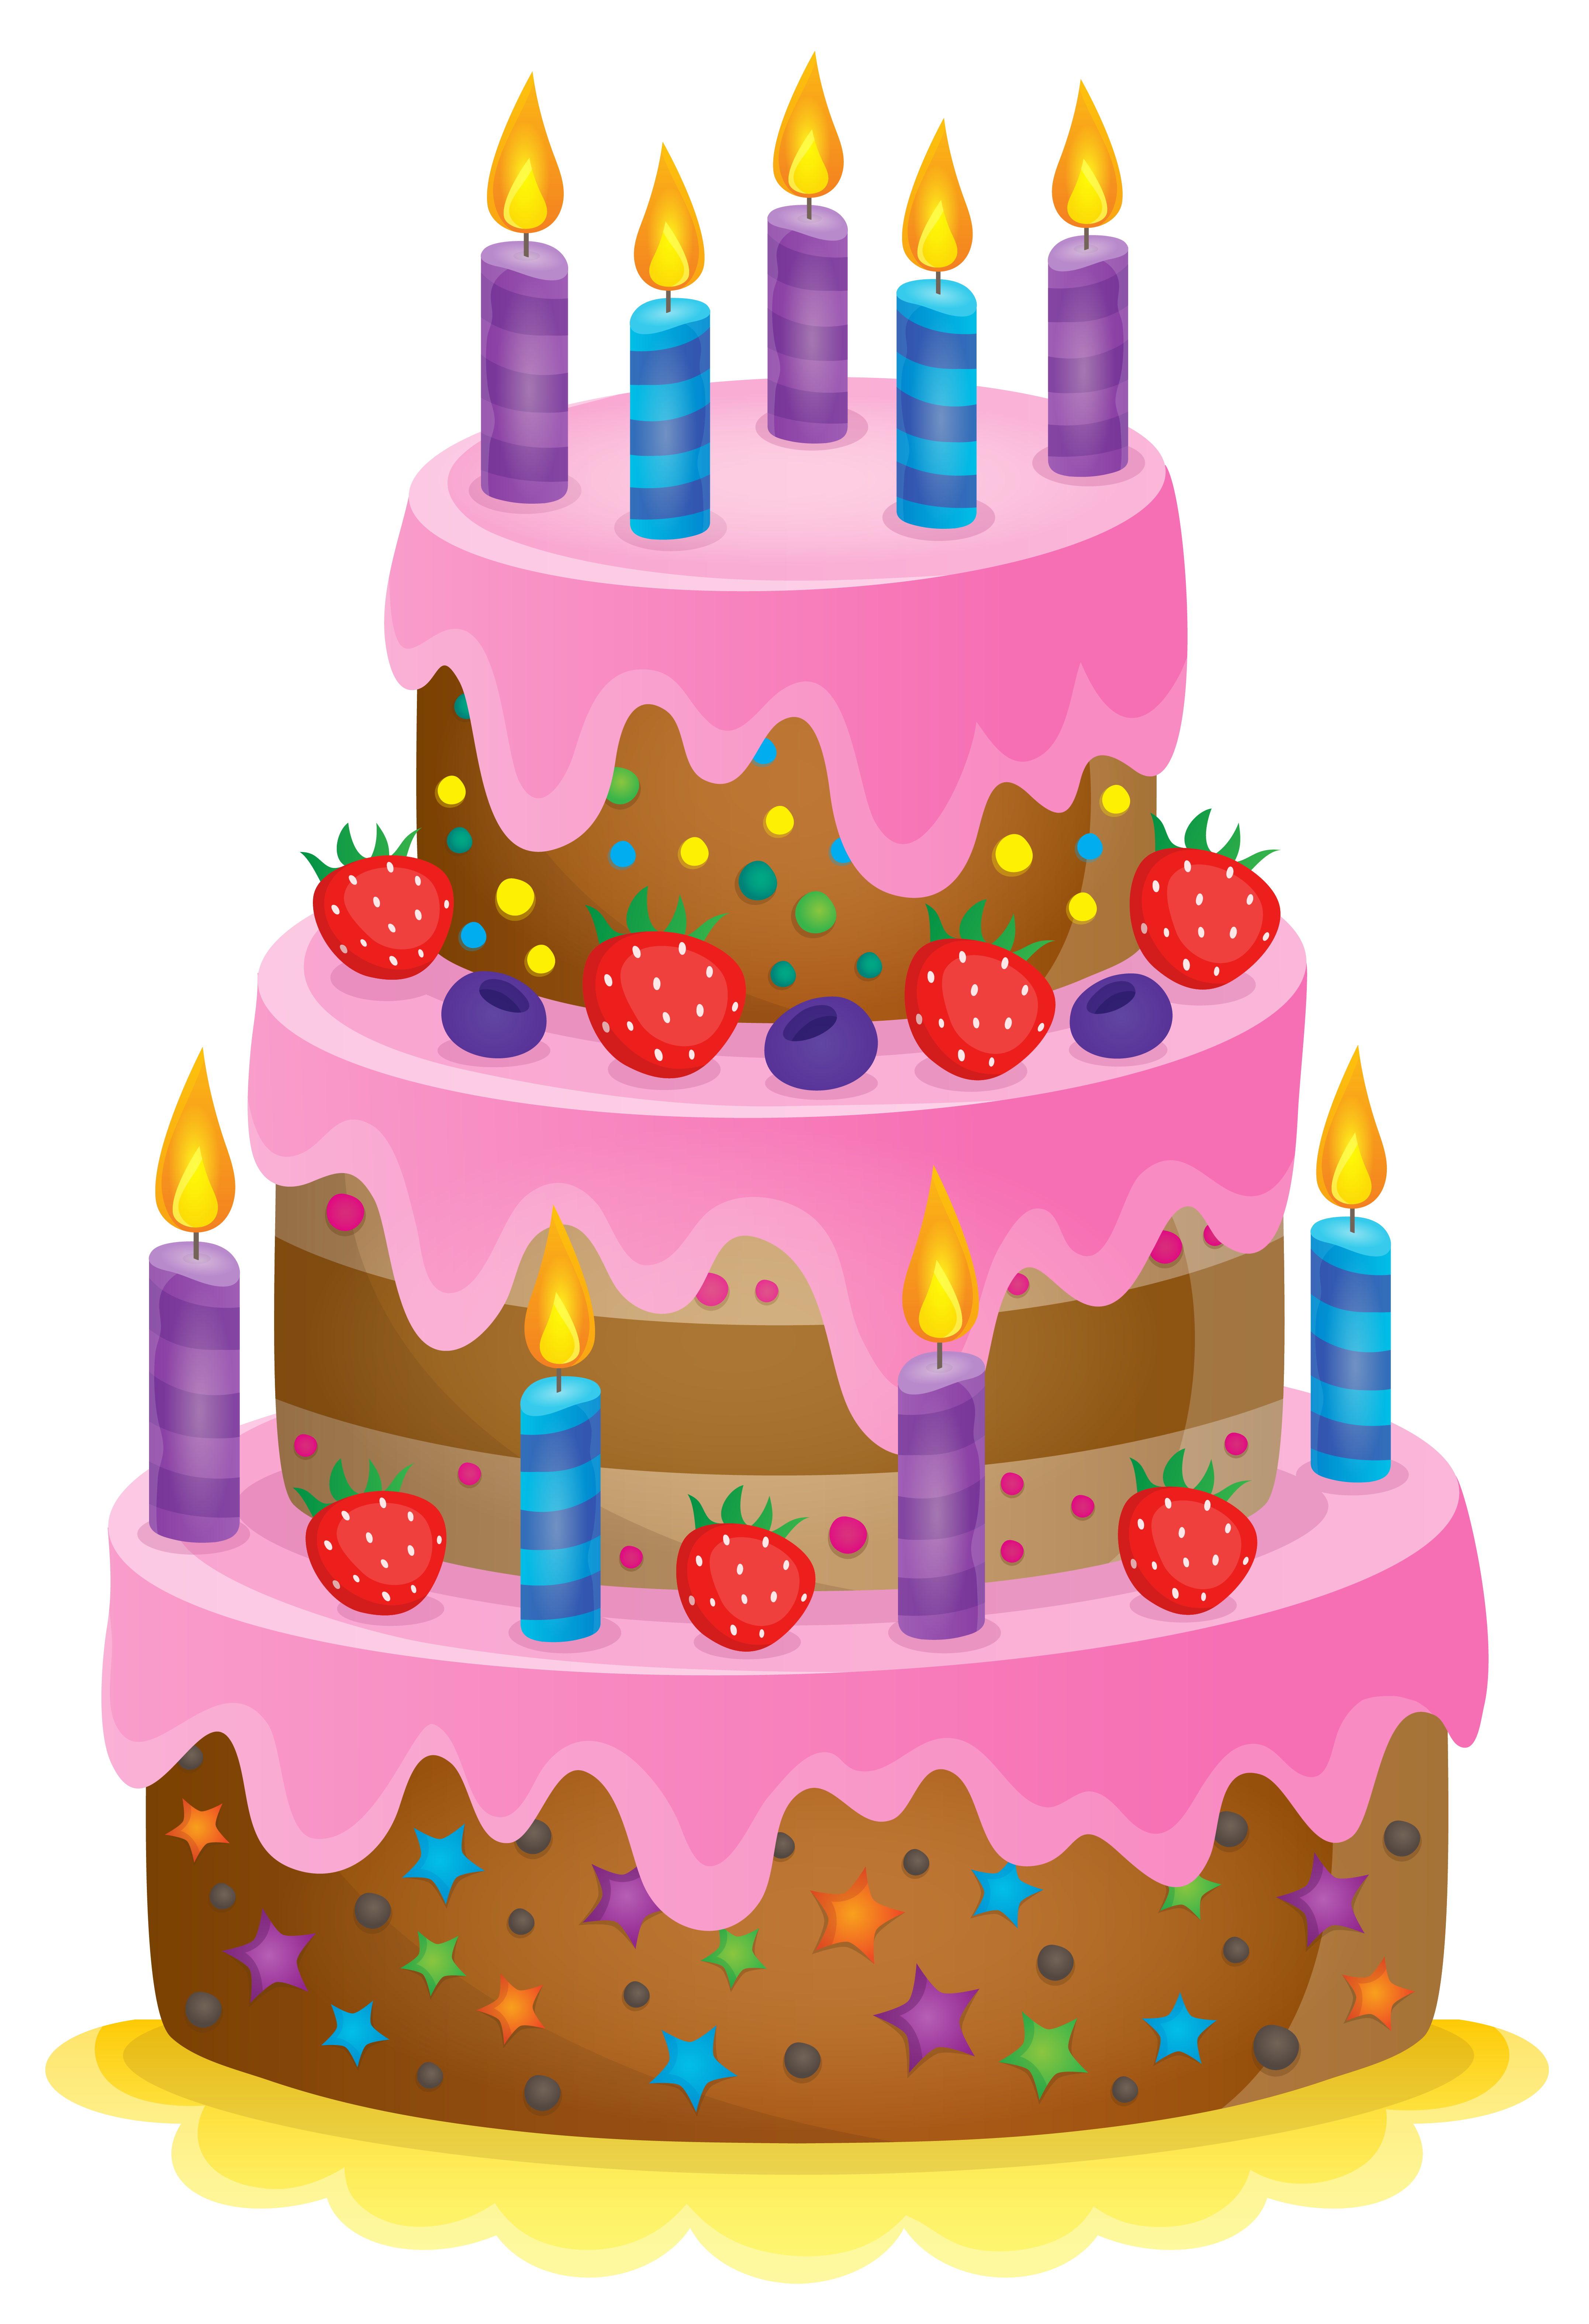 Birthday - Cake Graphic by Ladixstudio · Creative Fabrica